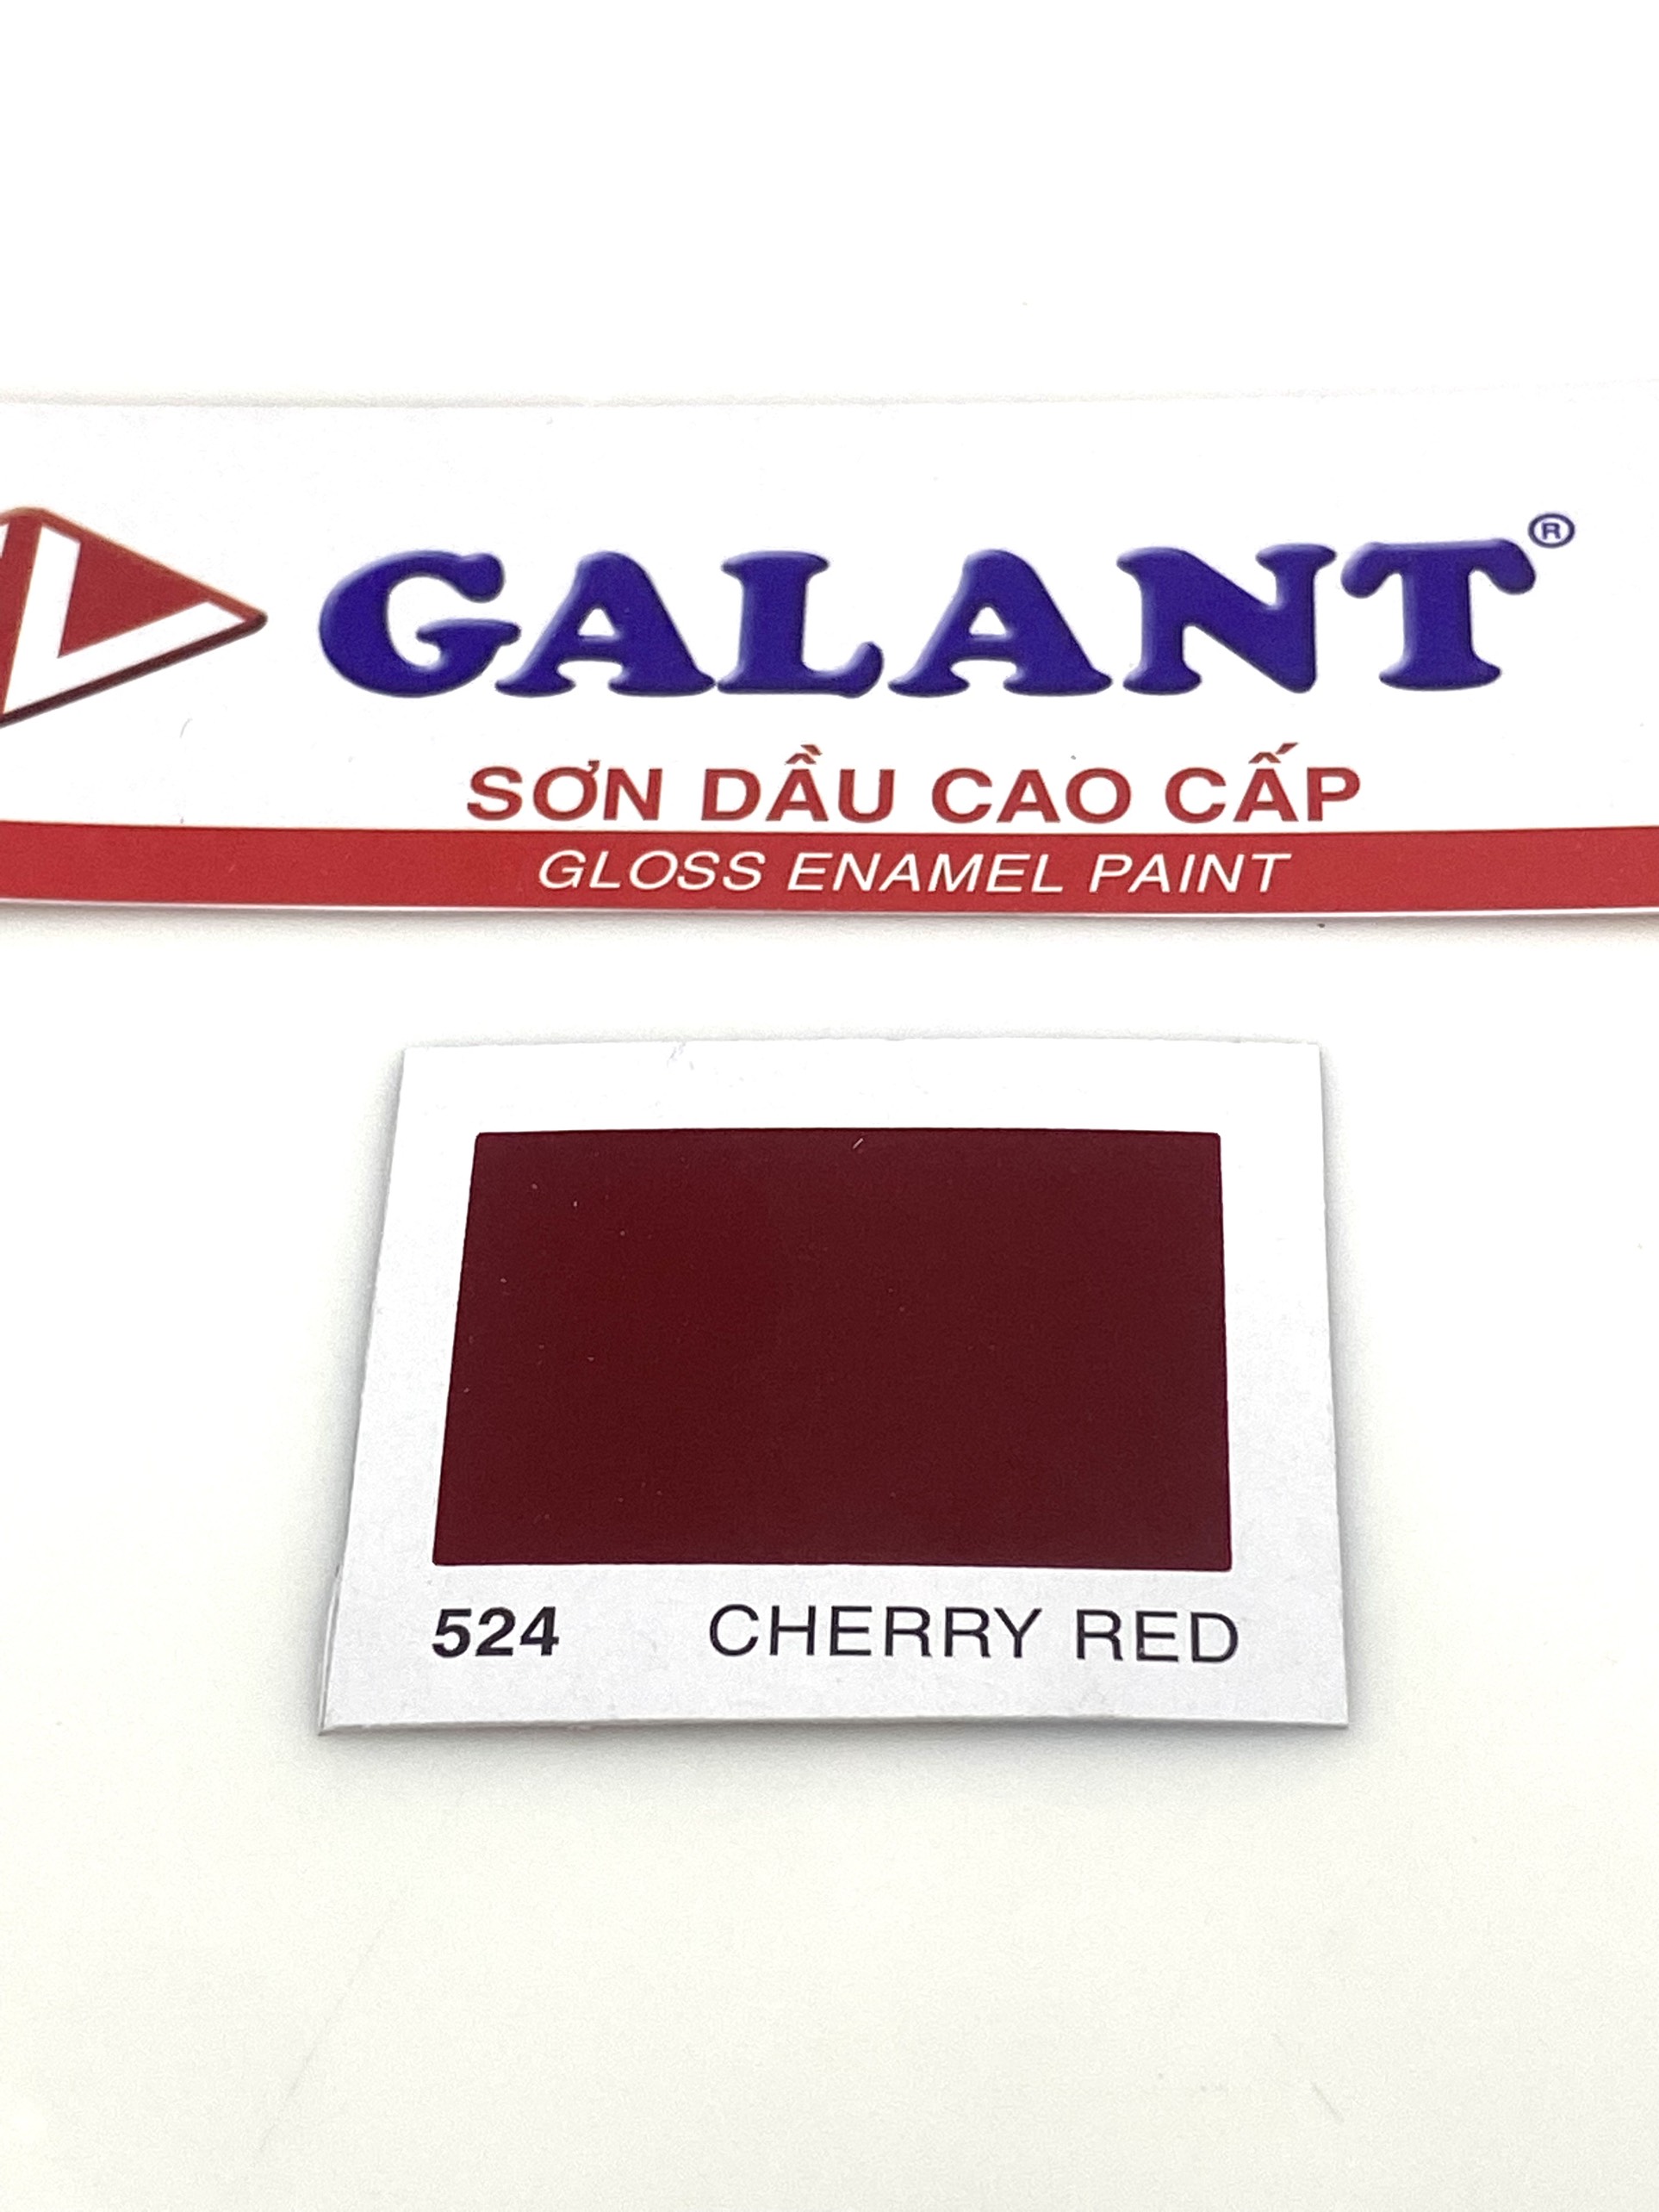 Sơn dầu Galant màu Cherry Red 524 _ 0.8L